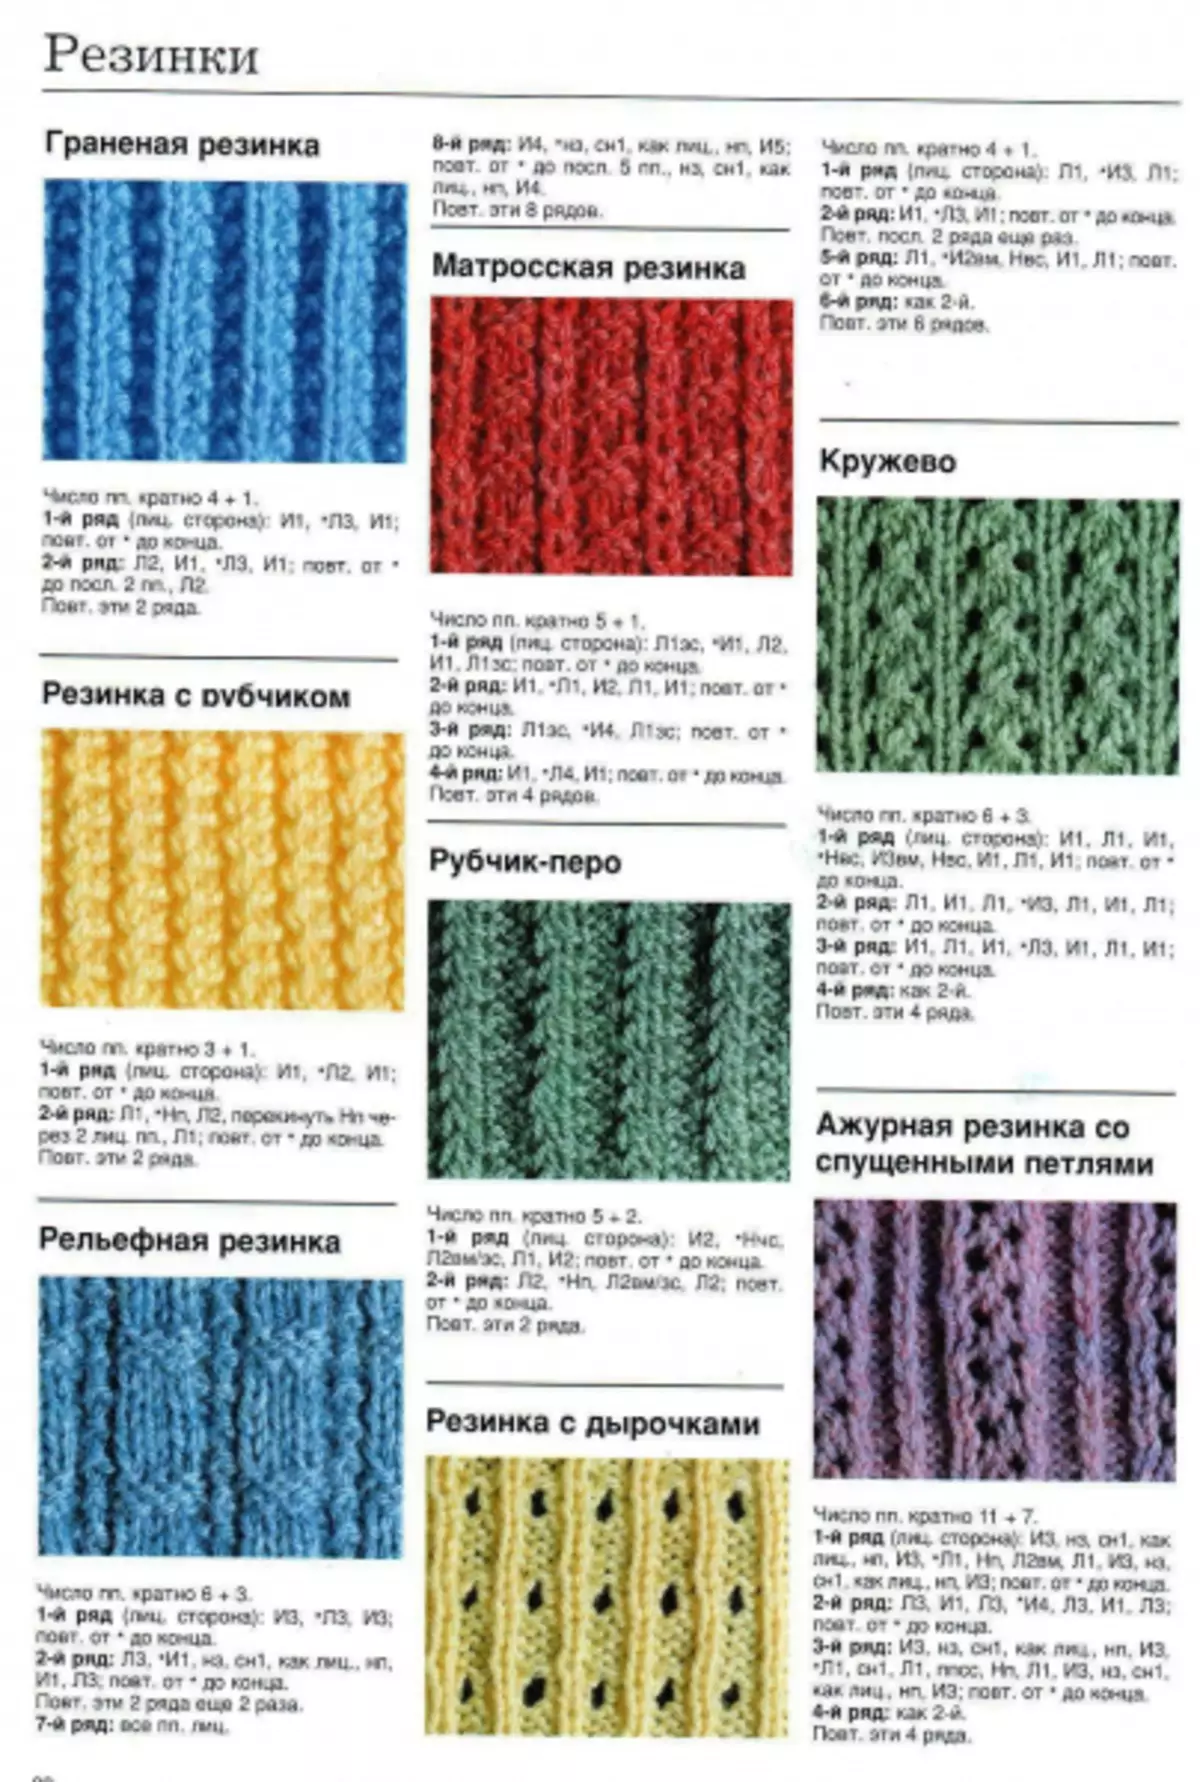 Fanjaitra knitting elastika: Karazana tetika misy famaritana sy horonan-tsary